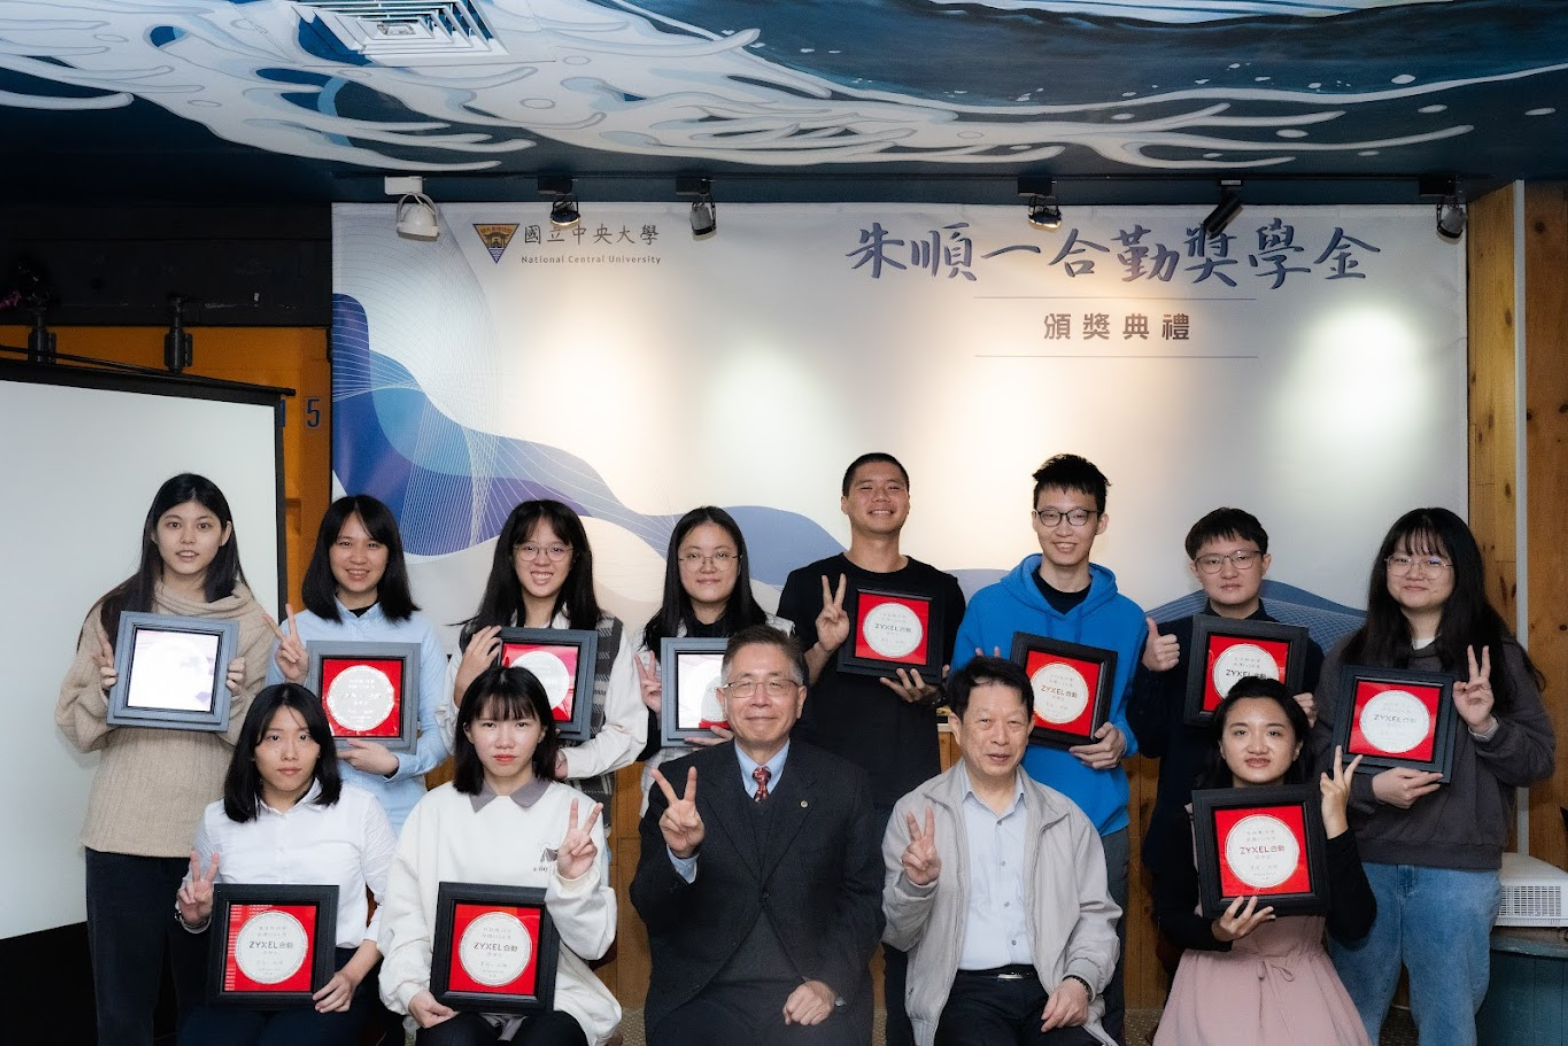 朱順一合勤獎學金頒獎典禮於12月20日舉行，共有15位同學獲獎。曾譯宏攝